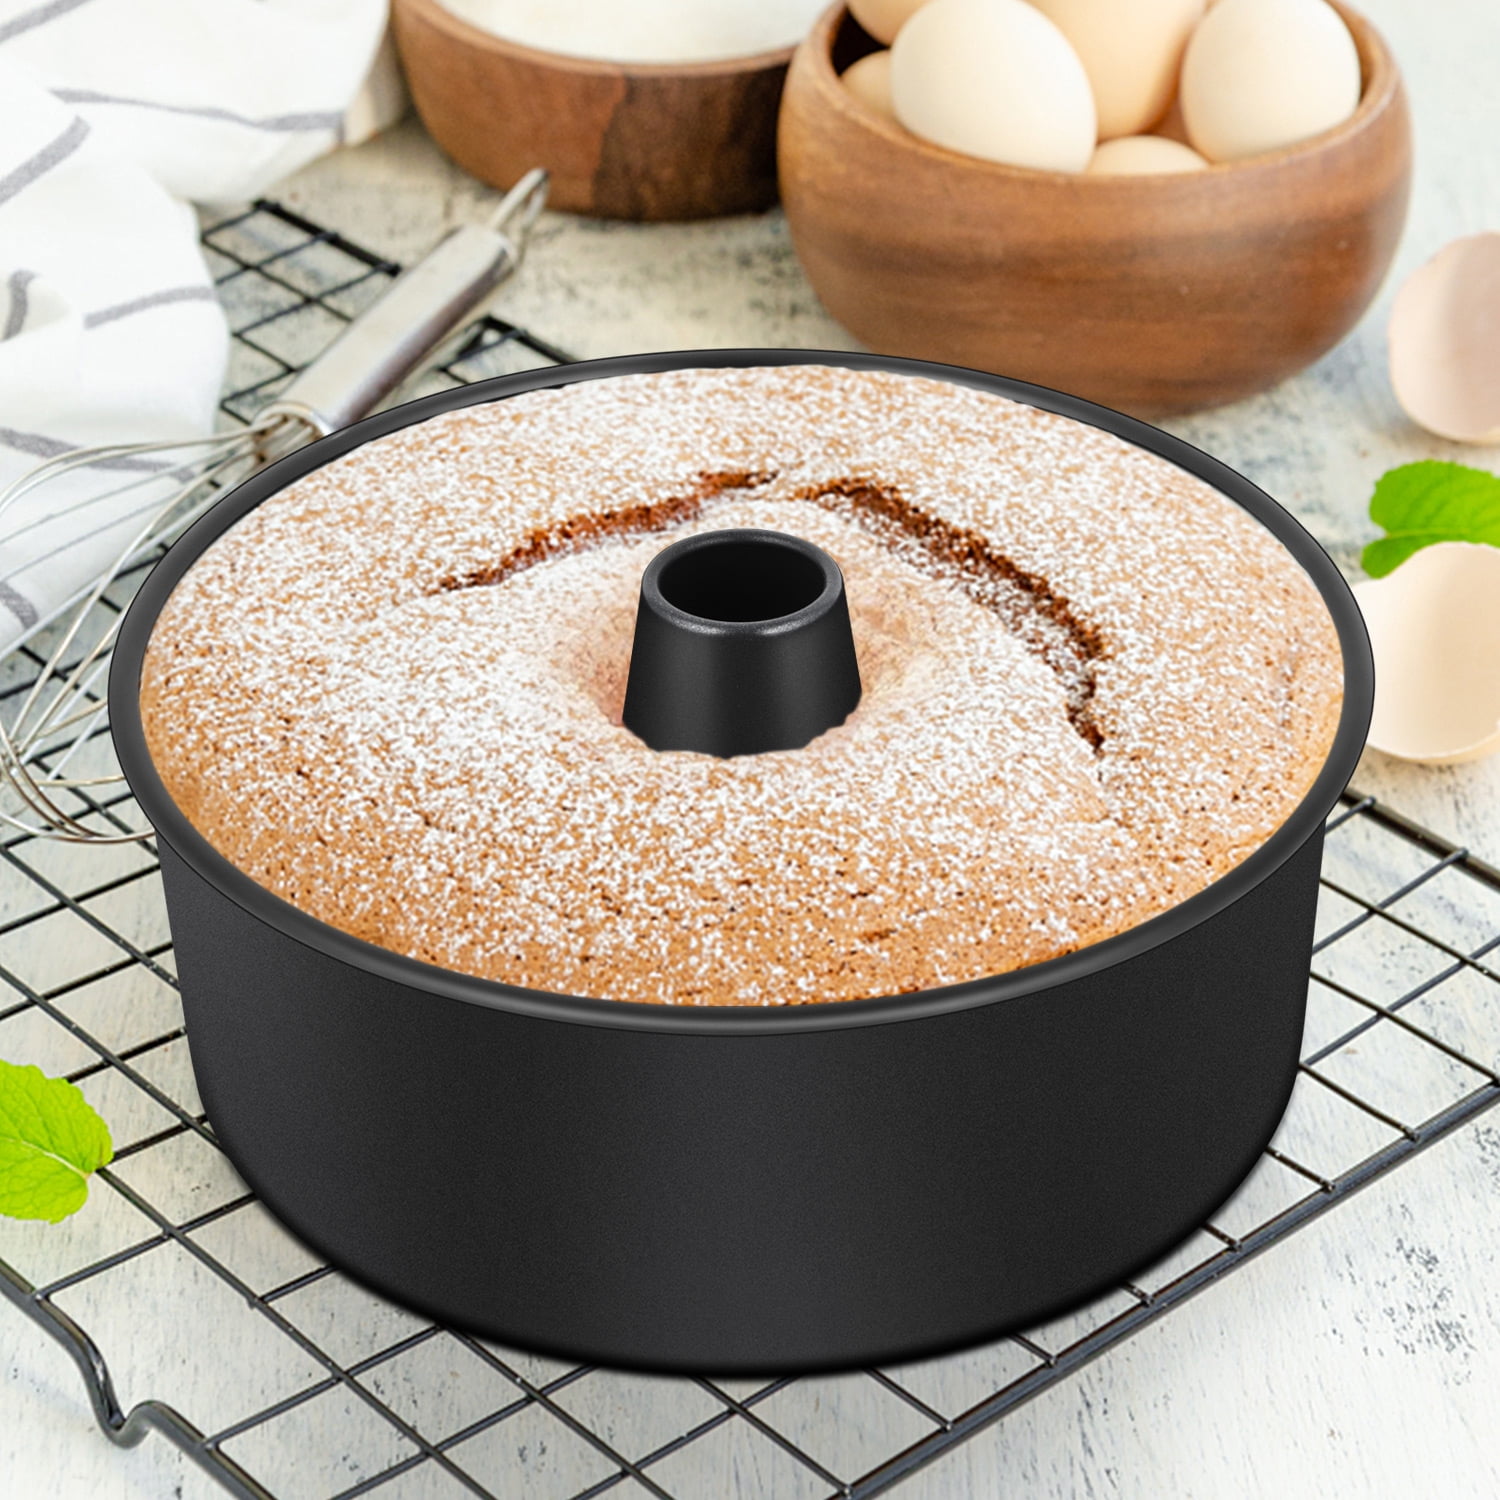 Webake 10 Inch non-stick bundt cake baking pan